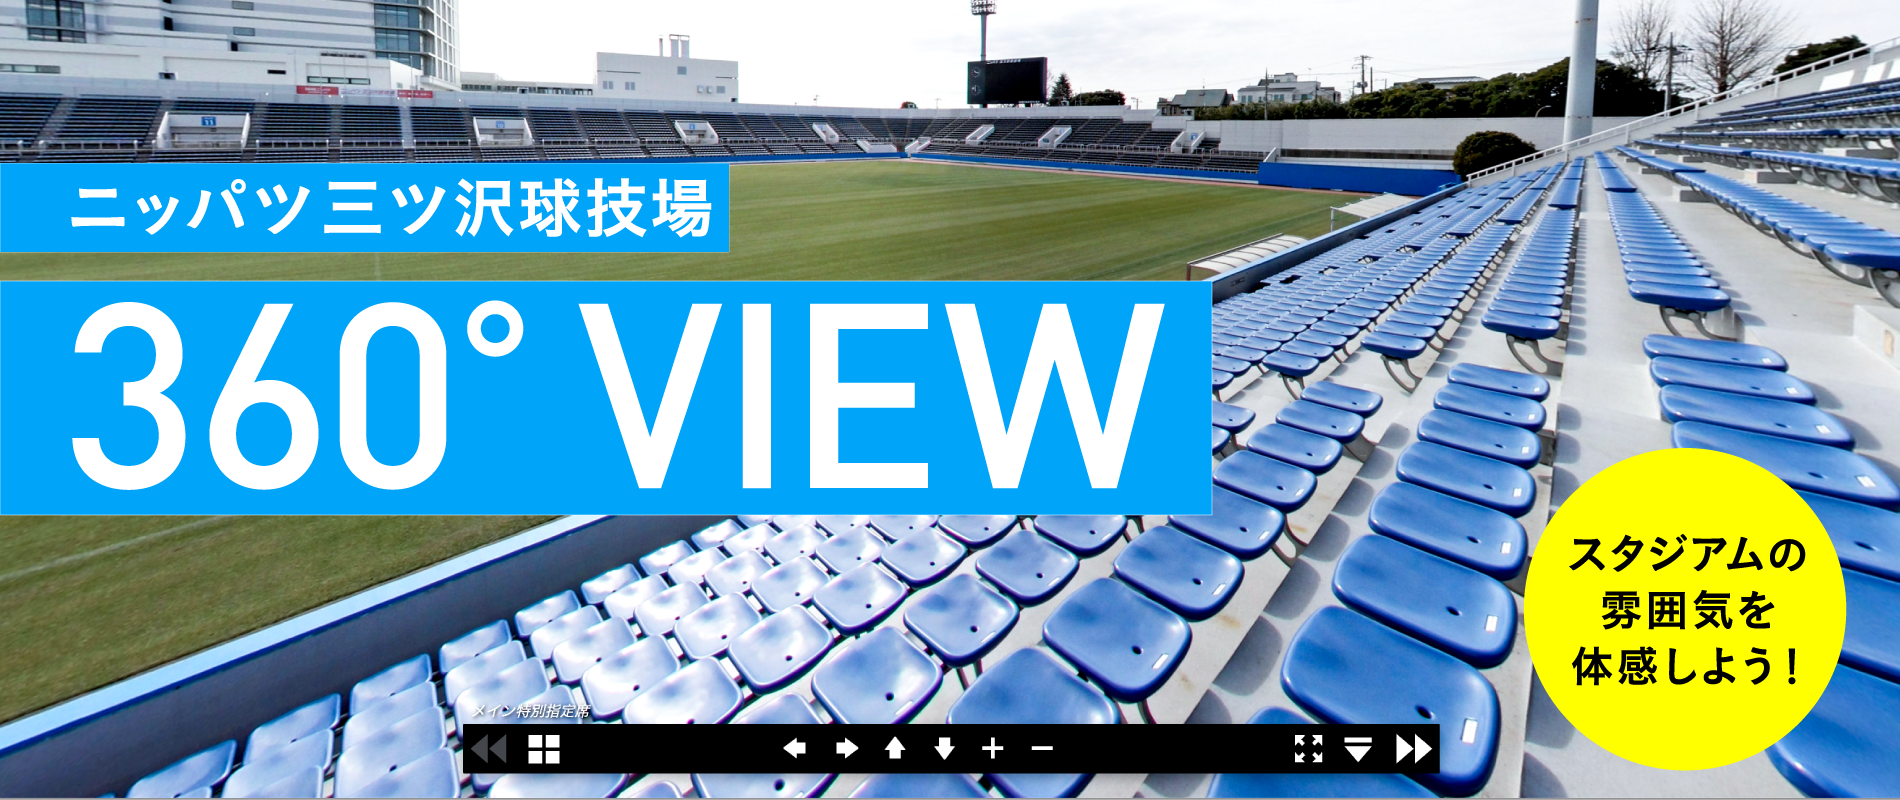 観戦ガイド 横浜fcオフィシャルウェブサイト